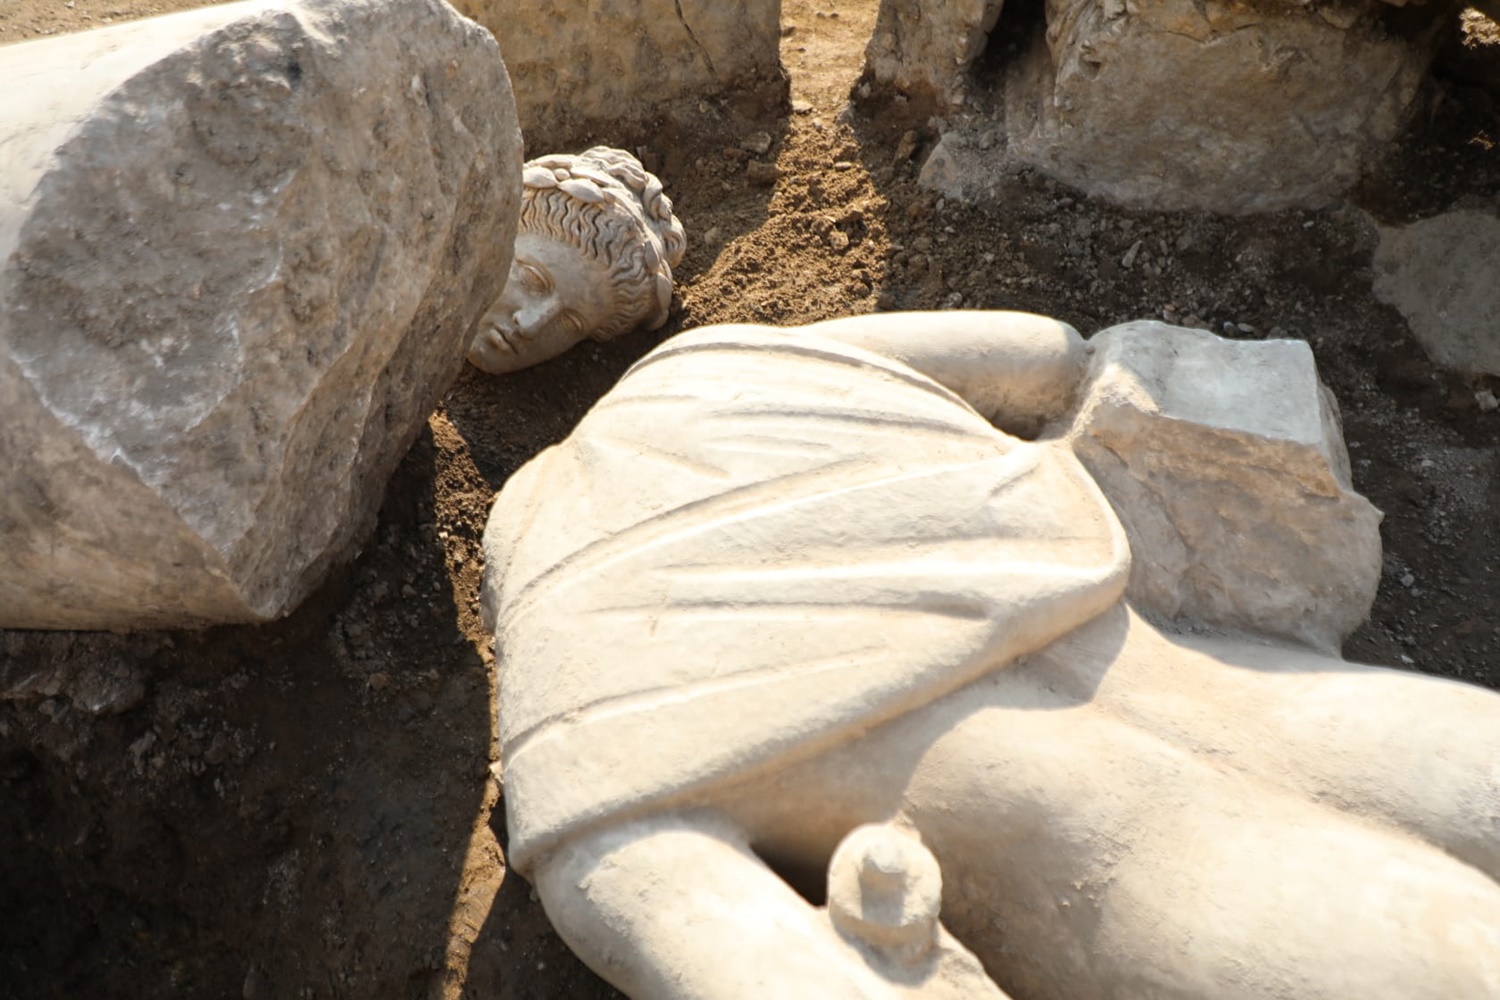 duzcede-antik-kentteki-kazilarda-apollo-heykeli-bulundu-5861-dhaphoto1.jpg